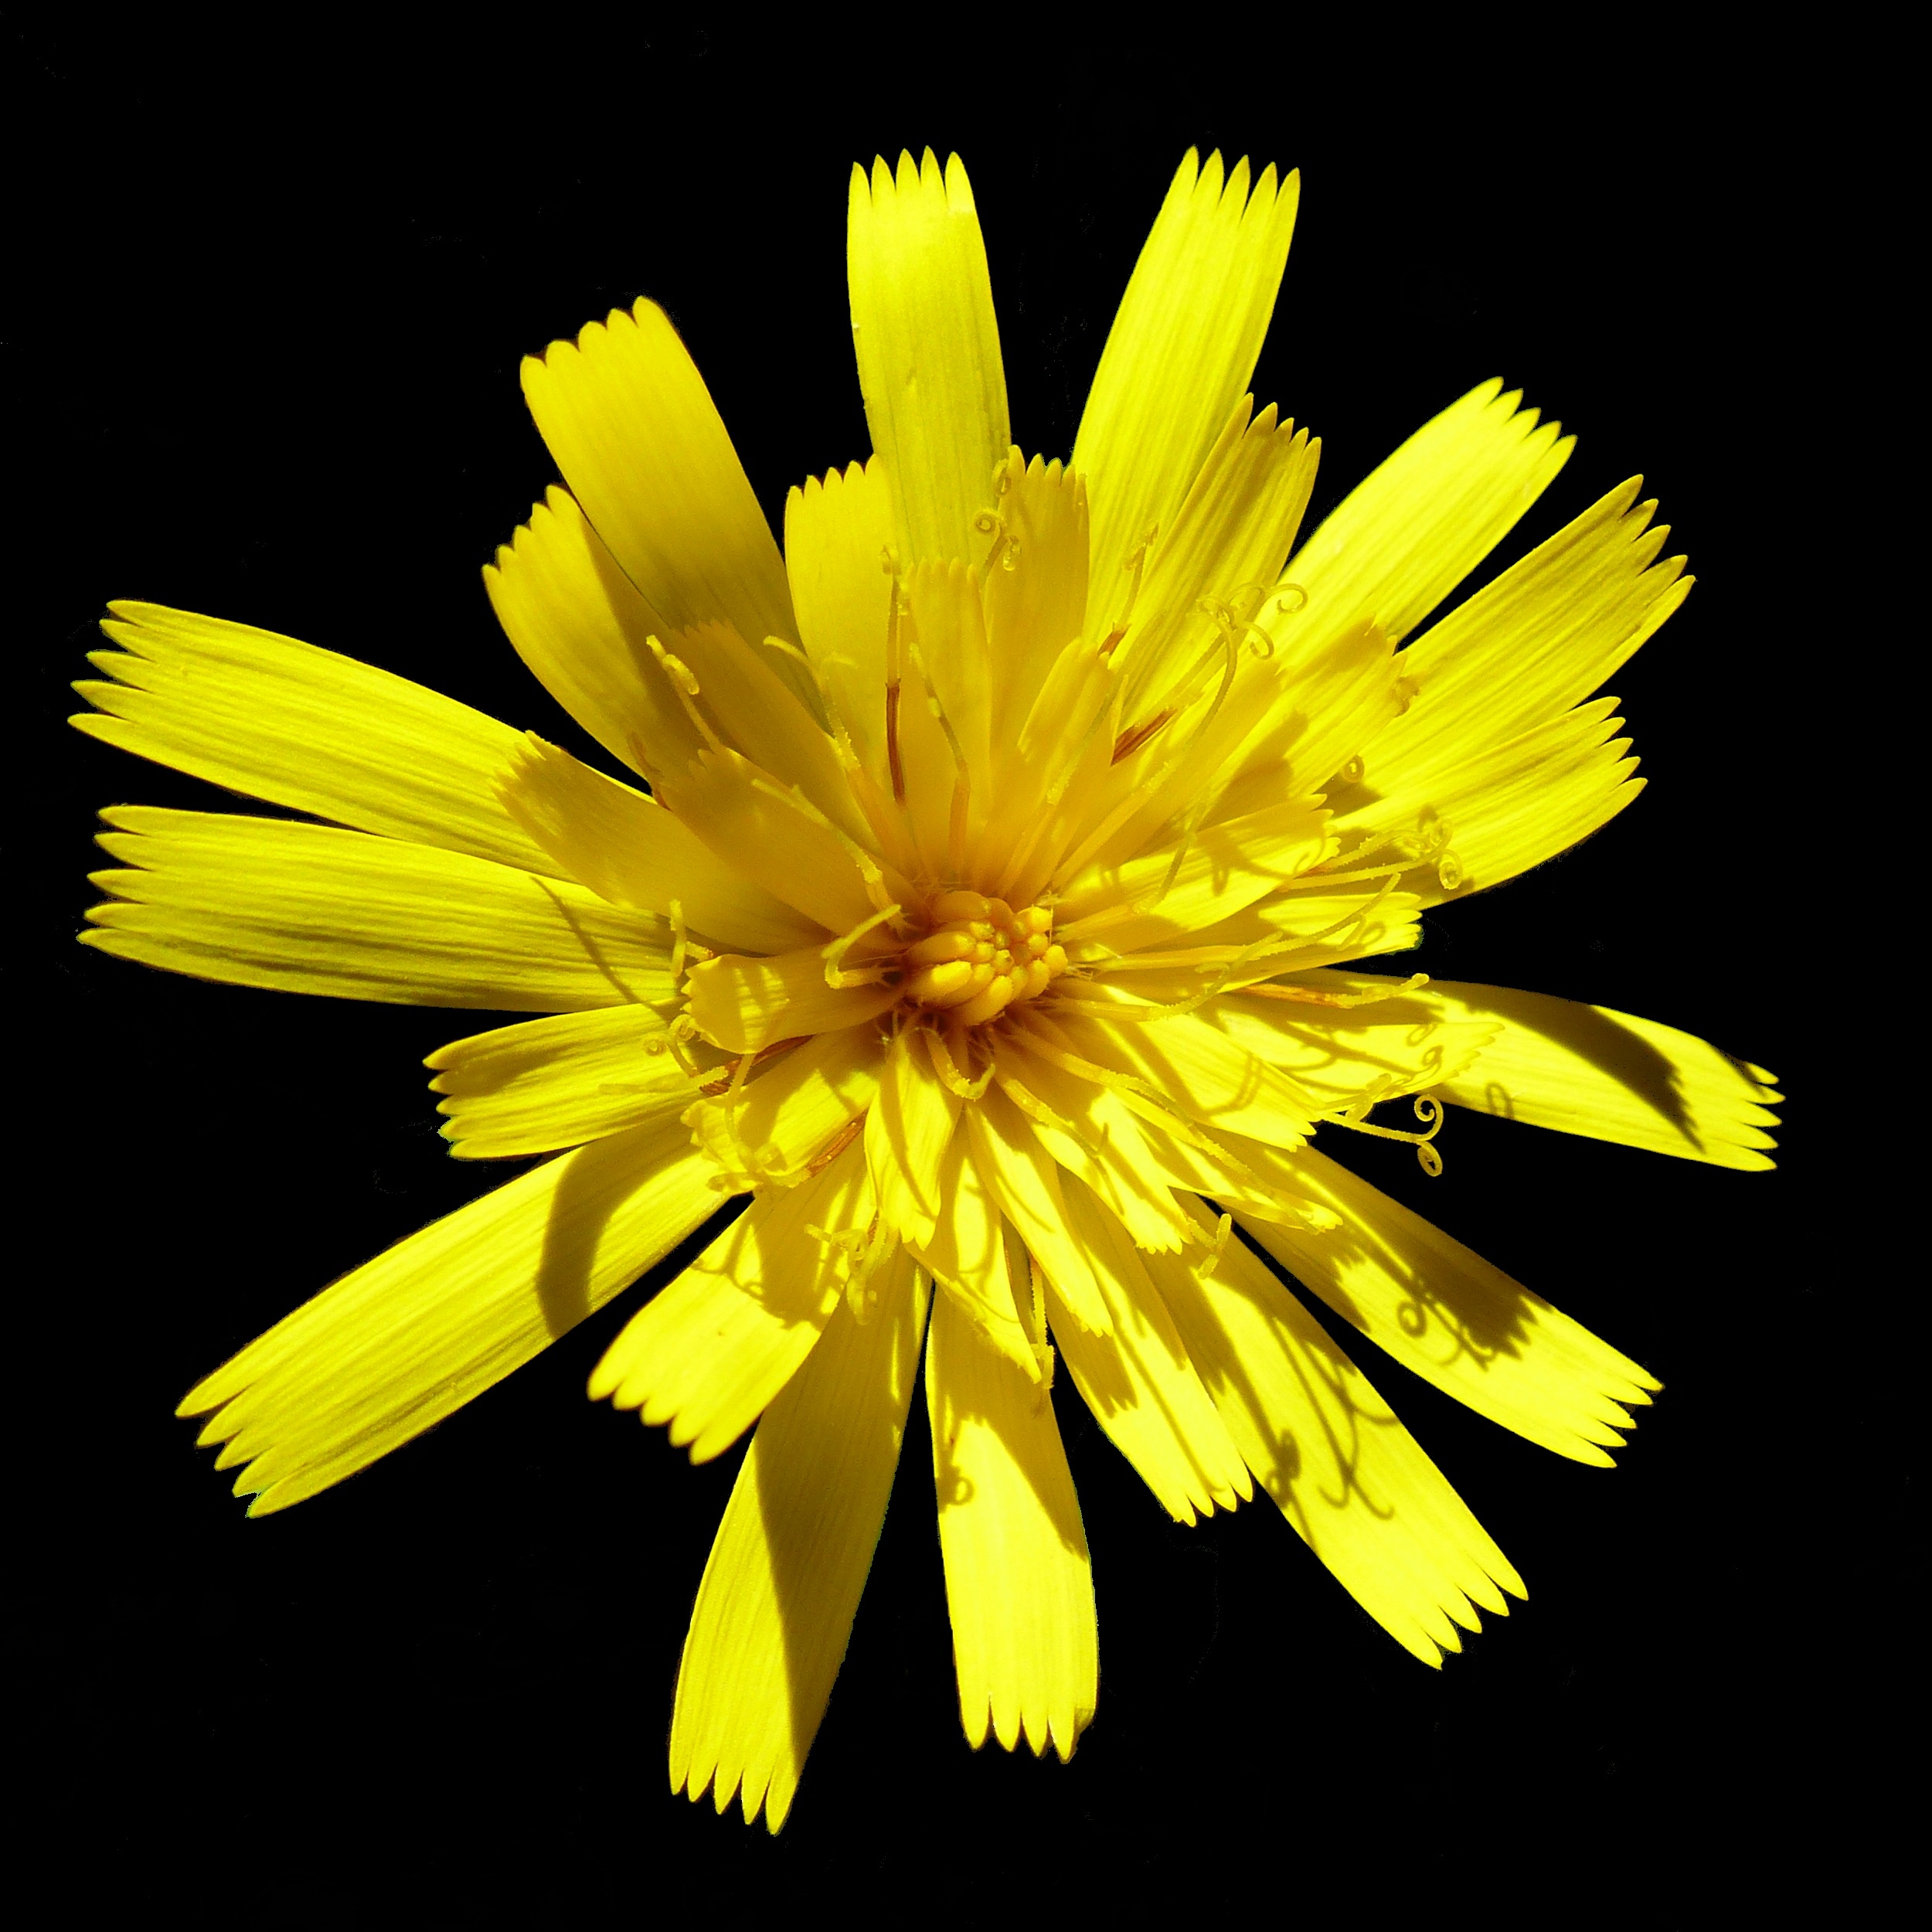 Бесплатное фото Желтый цветок из семейства маргариток на черном фоне